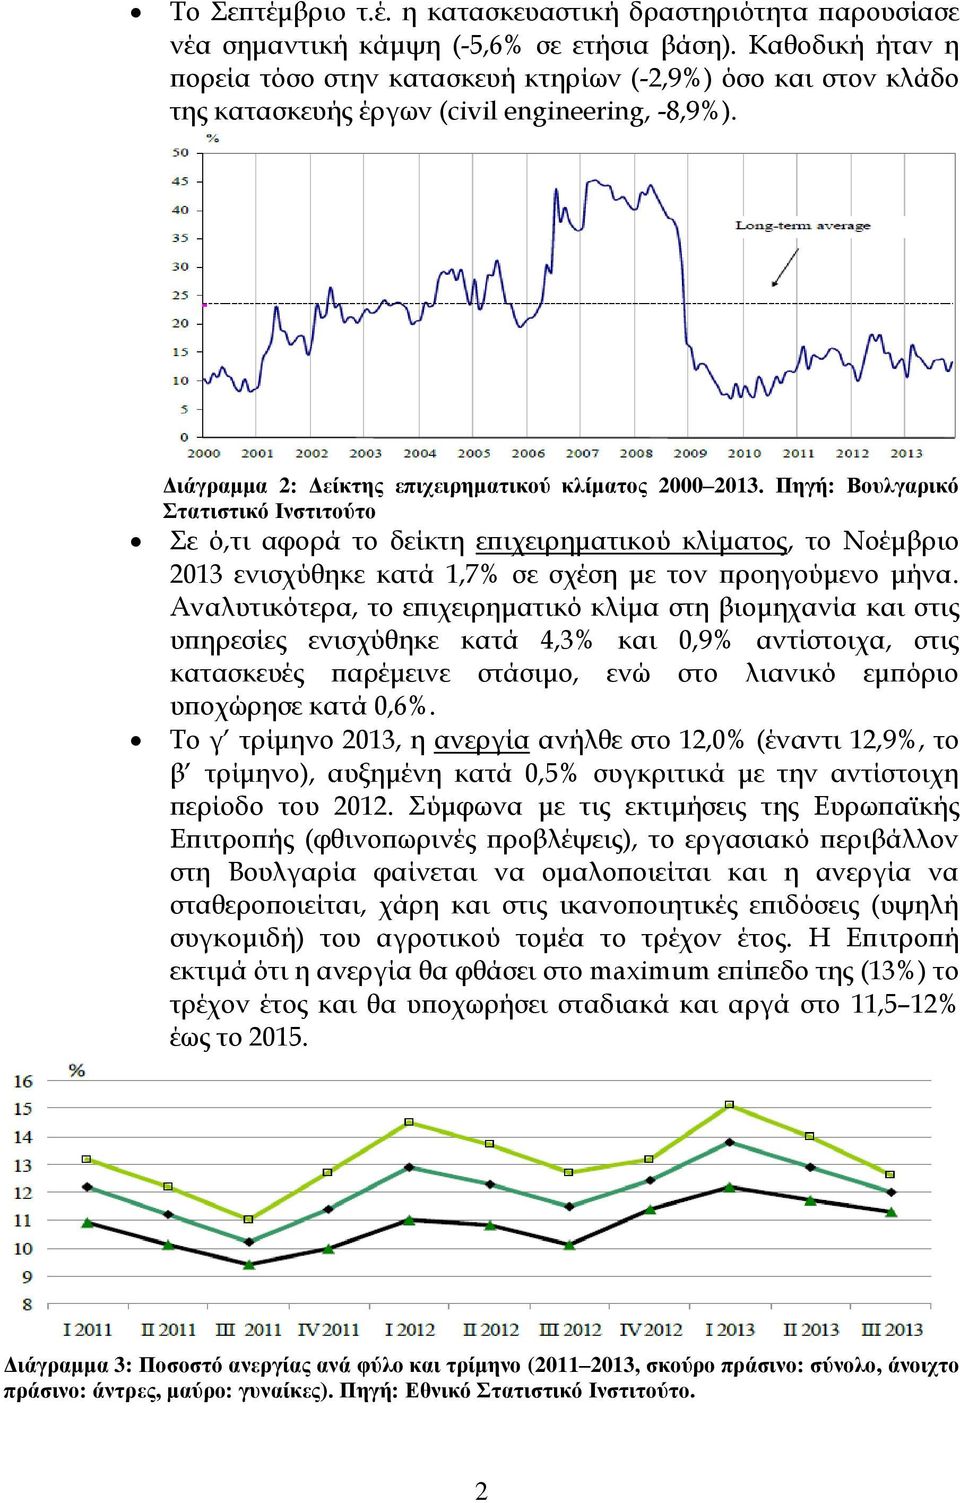 Πηγή: Βουλγαρικό Στατιστικό Ινστιτούτο Σε ό,τι αφορά το δείκτη επιχειρηματικού κλίματος, το Νοέμβριο 2013 ενισχύθηκε κατά 1,7% σε σχέση με τον προηγούμενο μήνα.